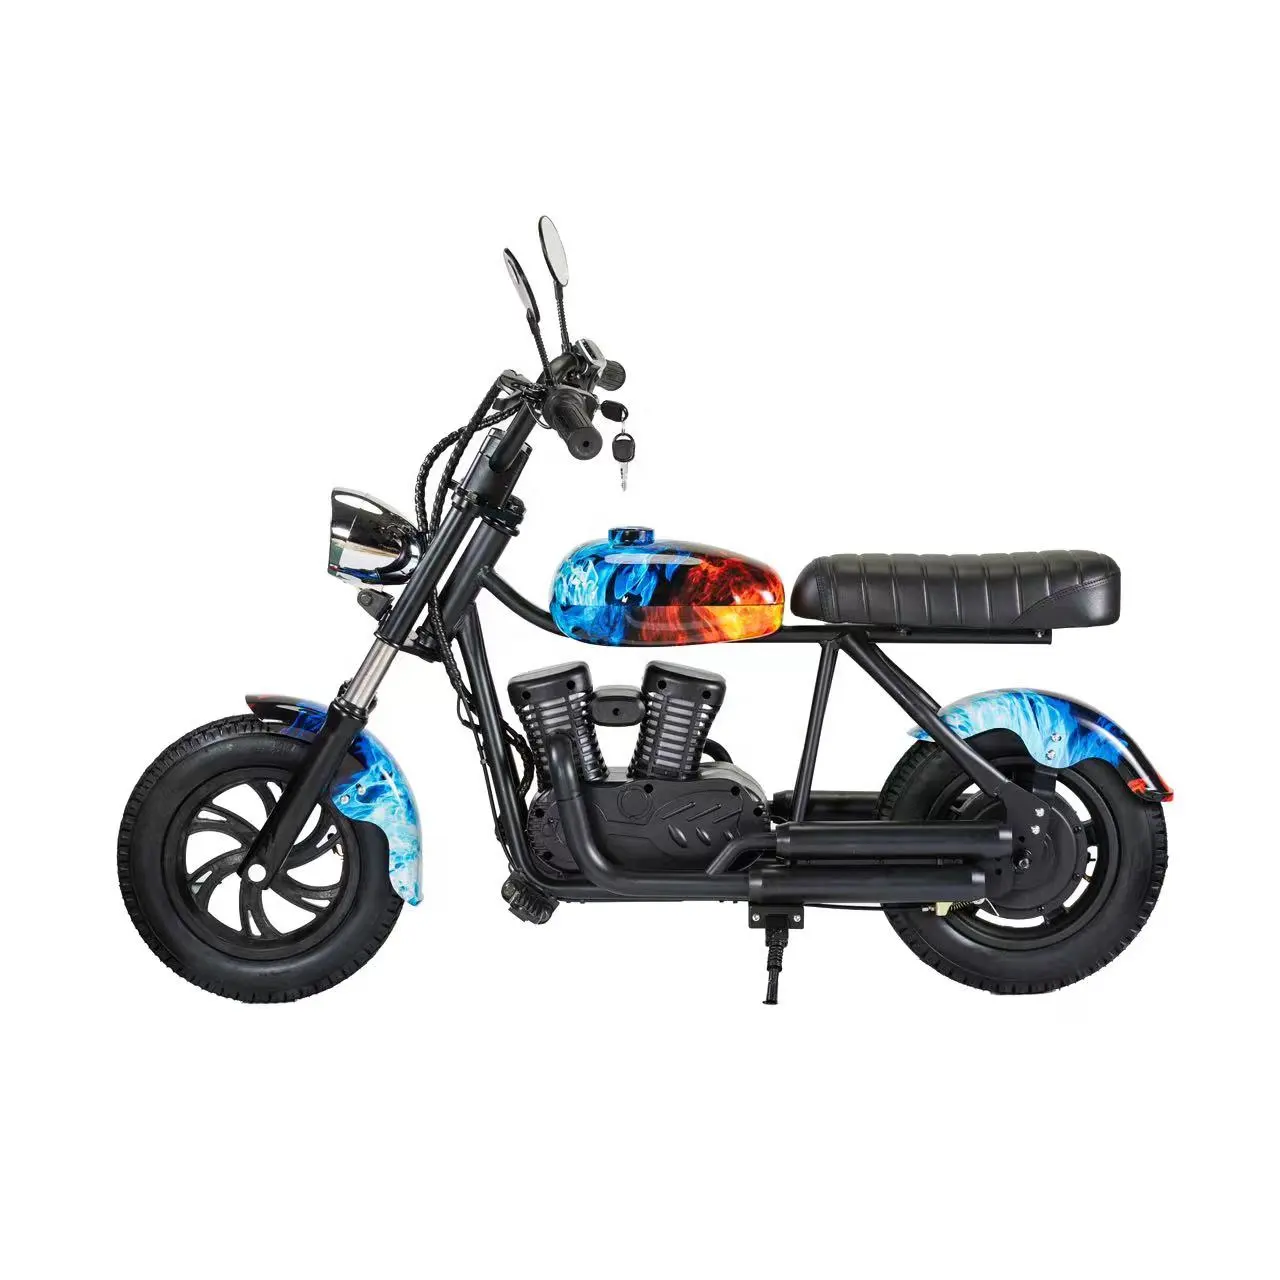 Hoge Kwaliteit Nieuwe 180W 24V Super Elektrische Kids Crossmotor Big Power Pit Bike Motorfietsen Motorcross Motorfiets Met Ce